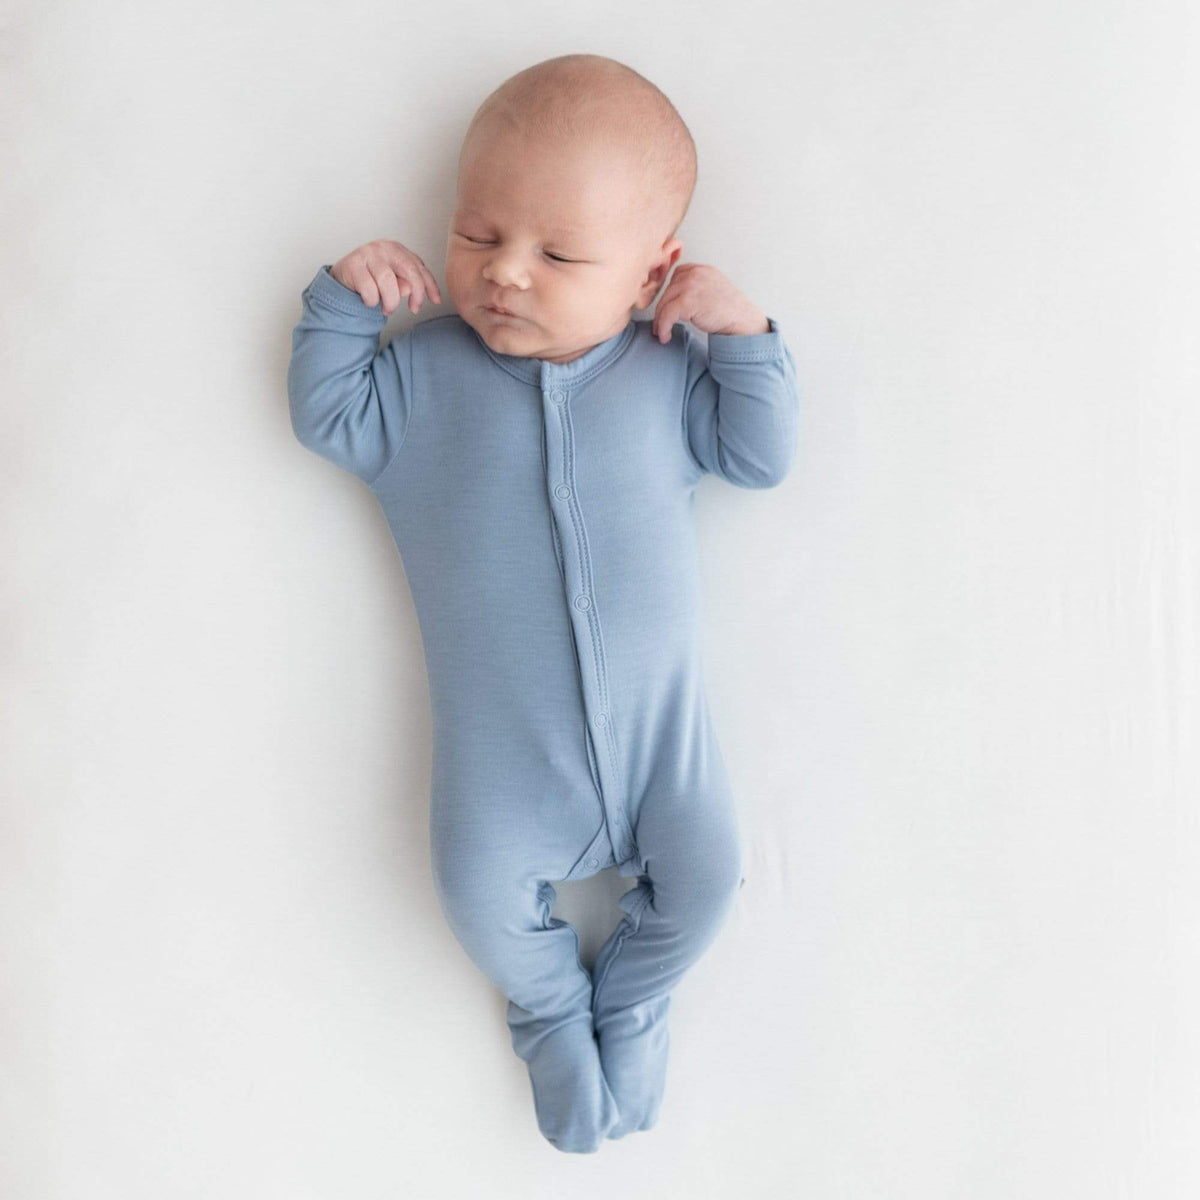 Newborn wearing Kyte Baby Footie in Slate